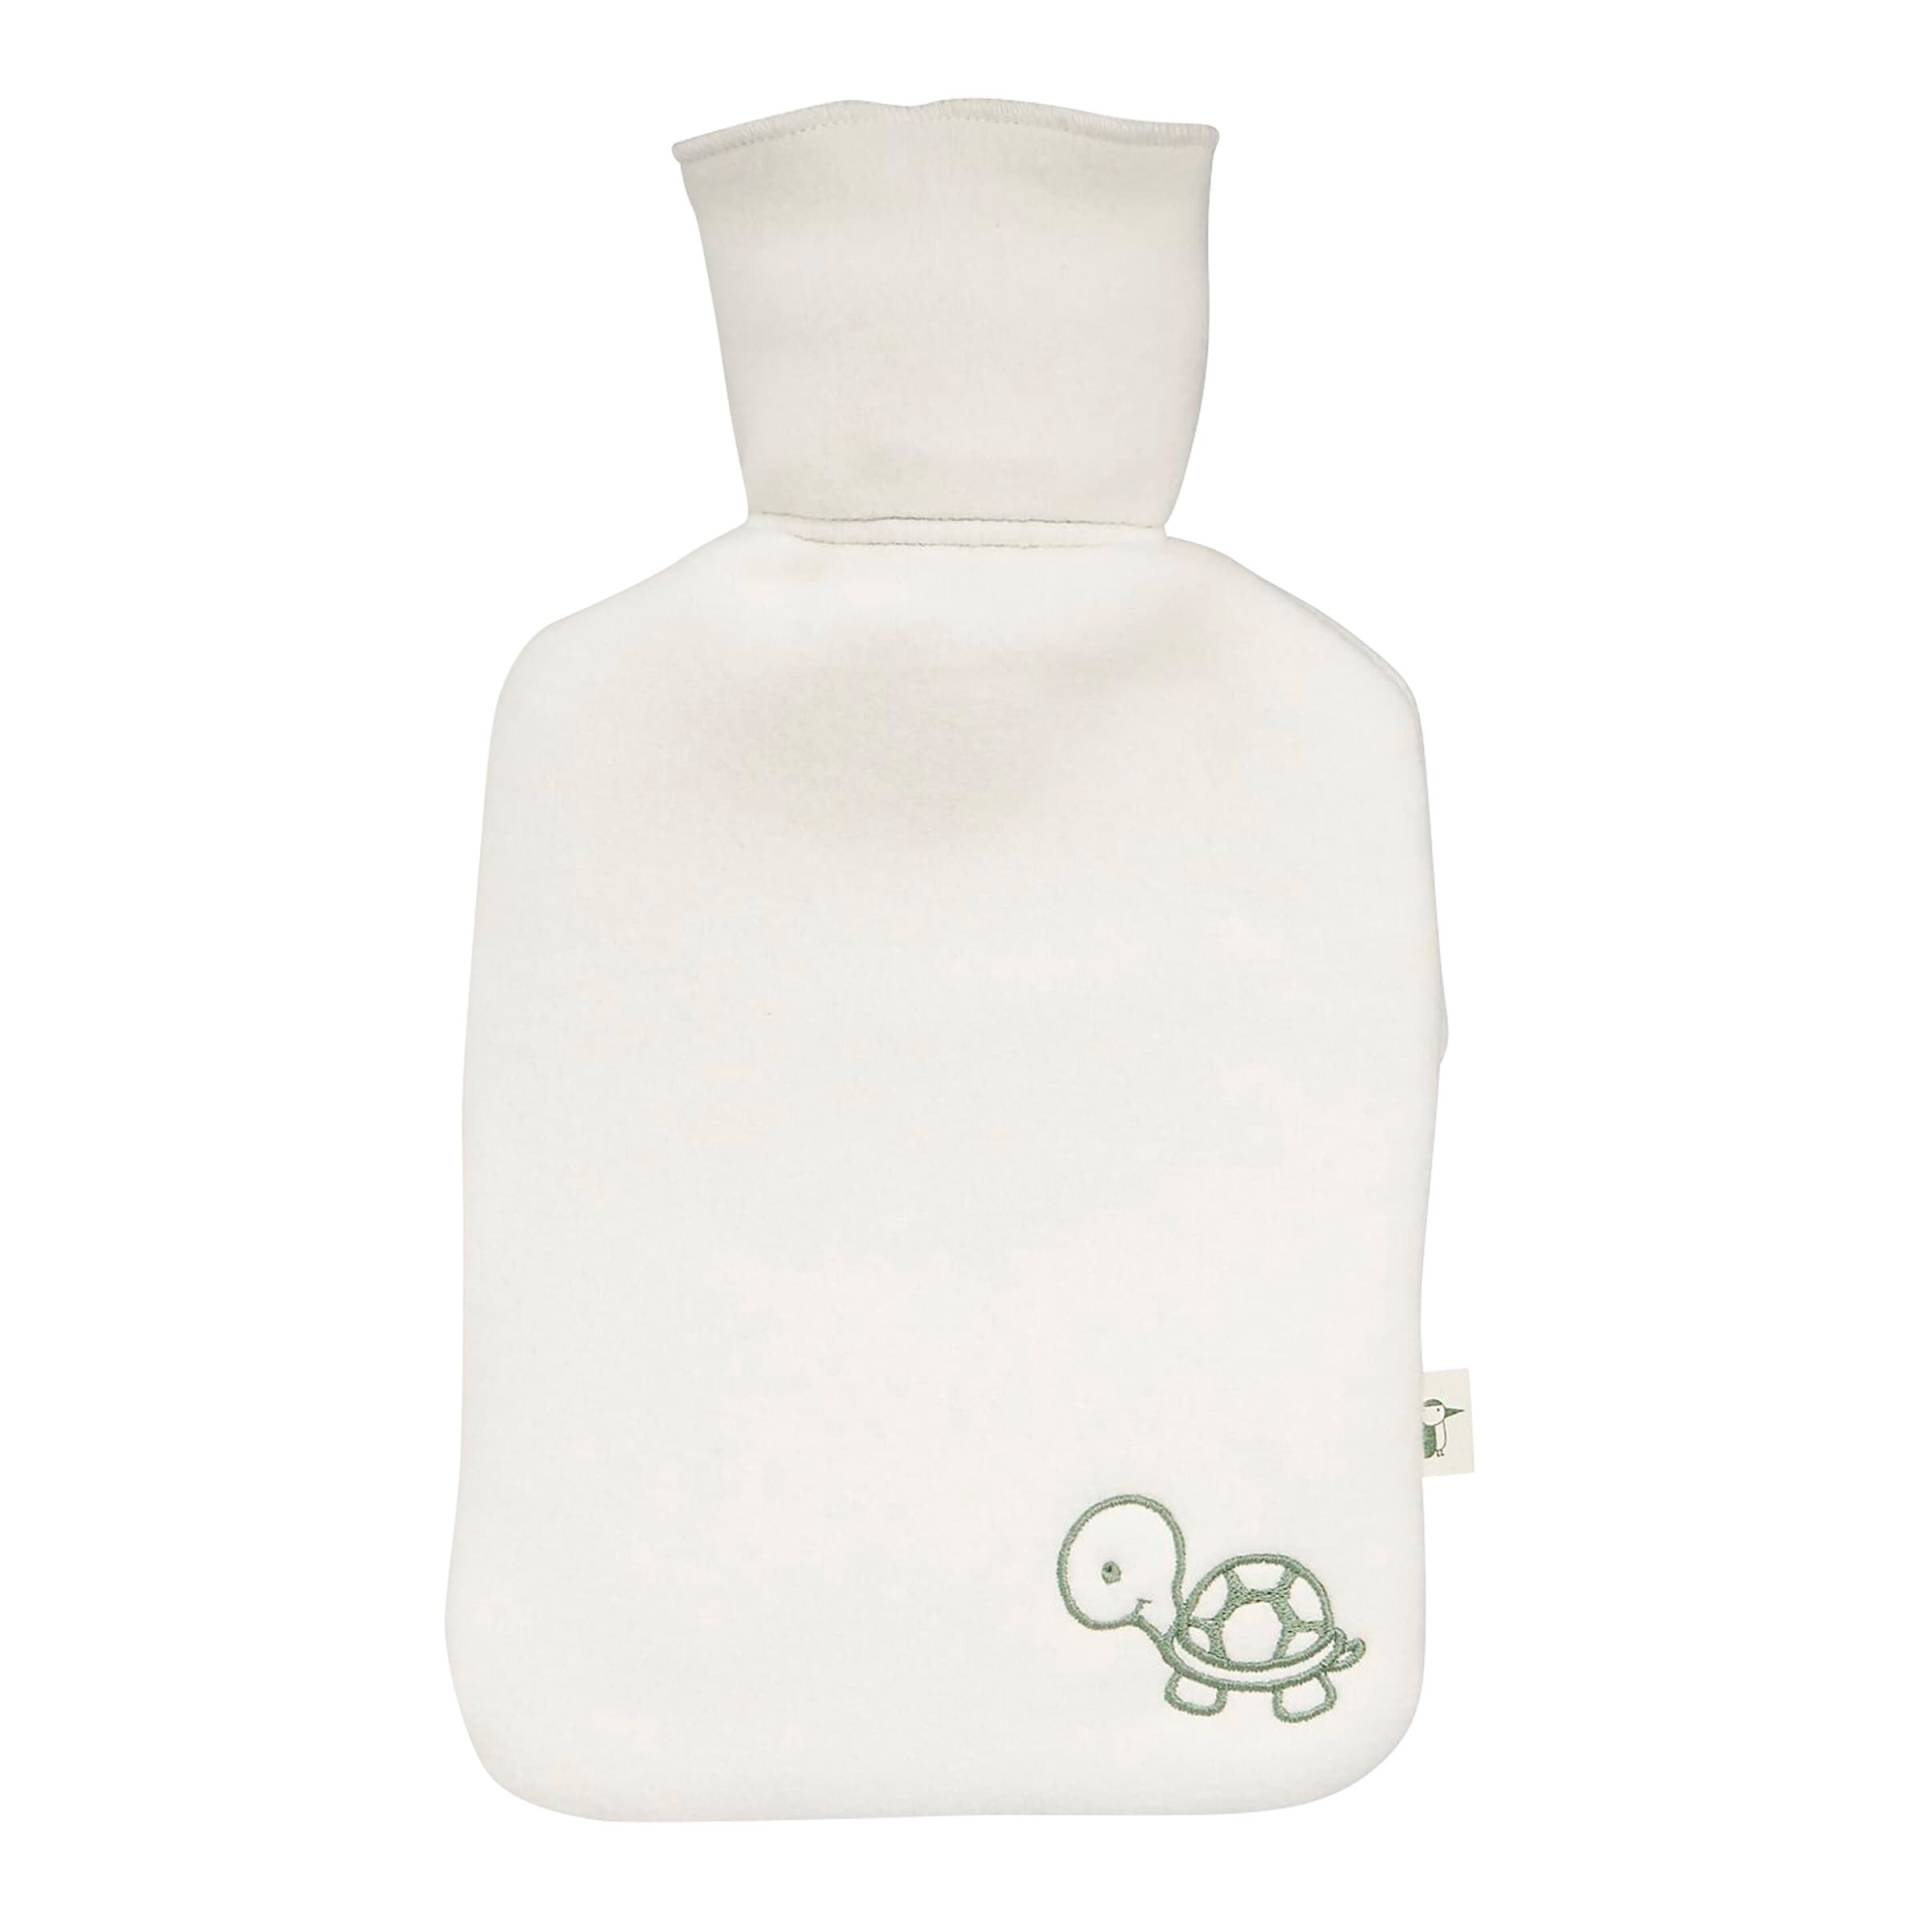 Grünspecht Wärmflasche aus Naturkautschuk mit Bio-Bezug von Grünspecht